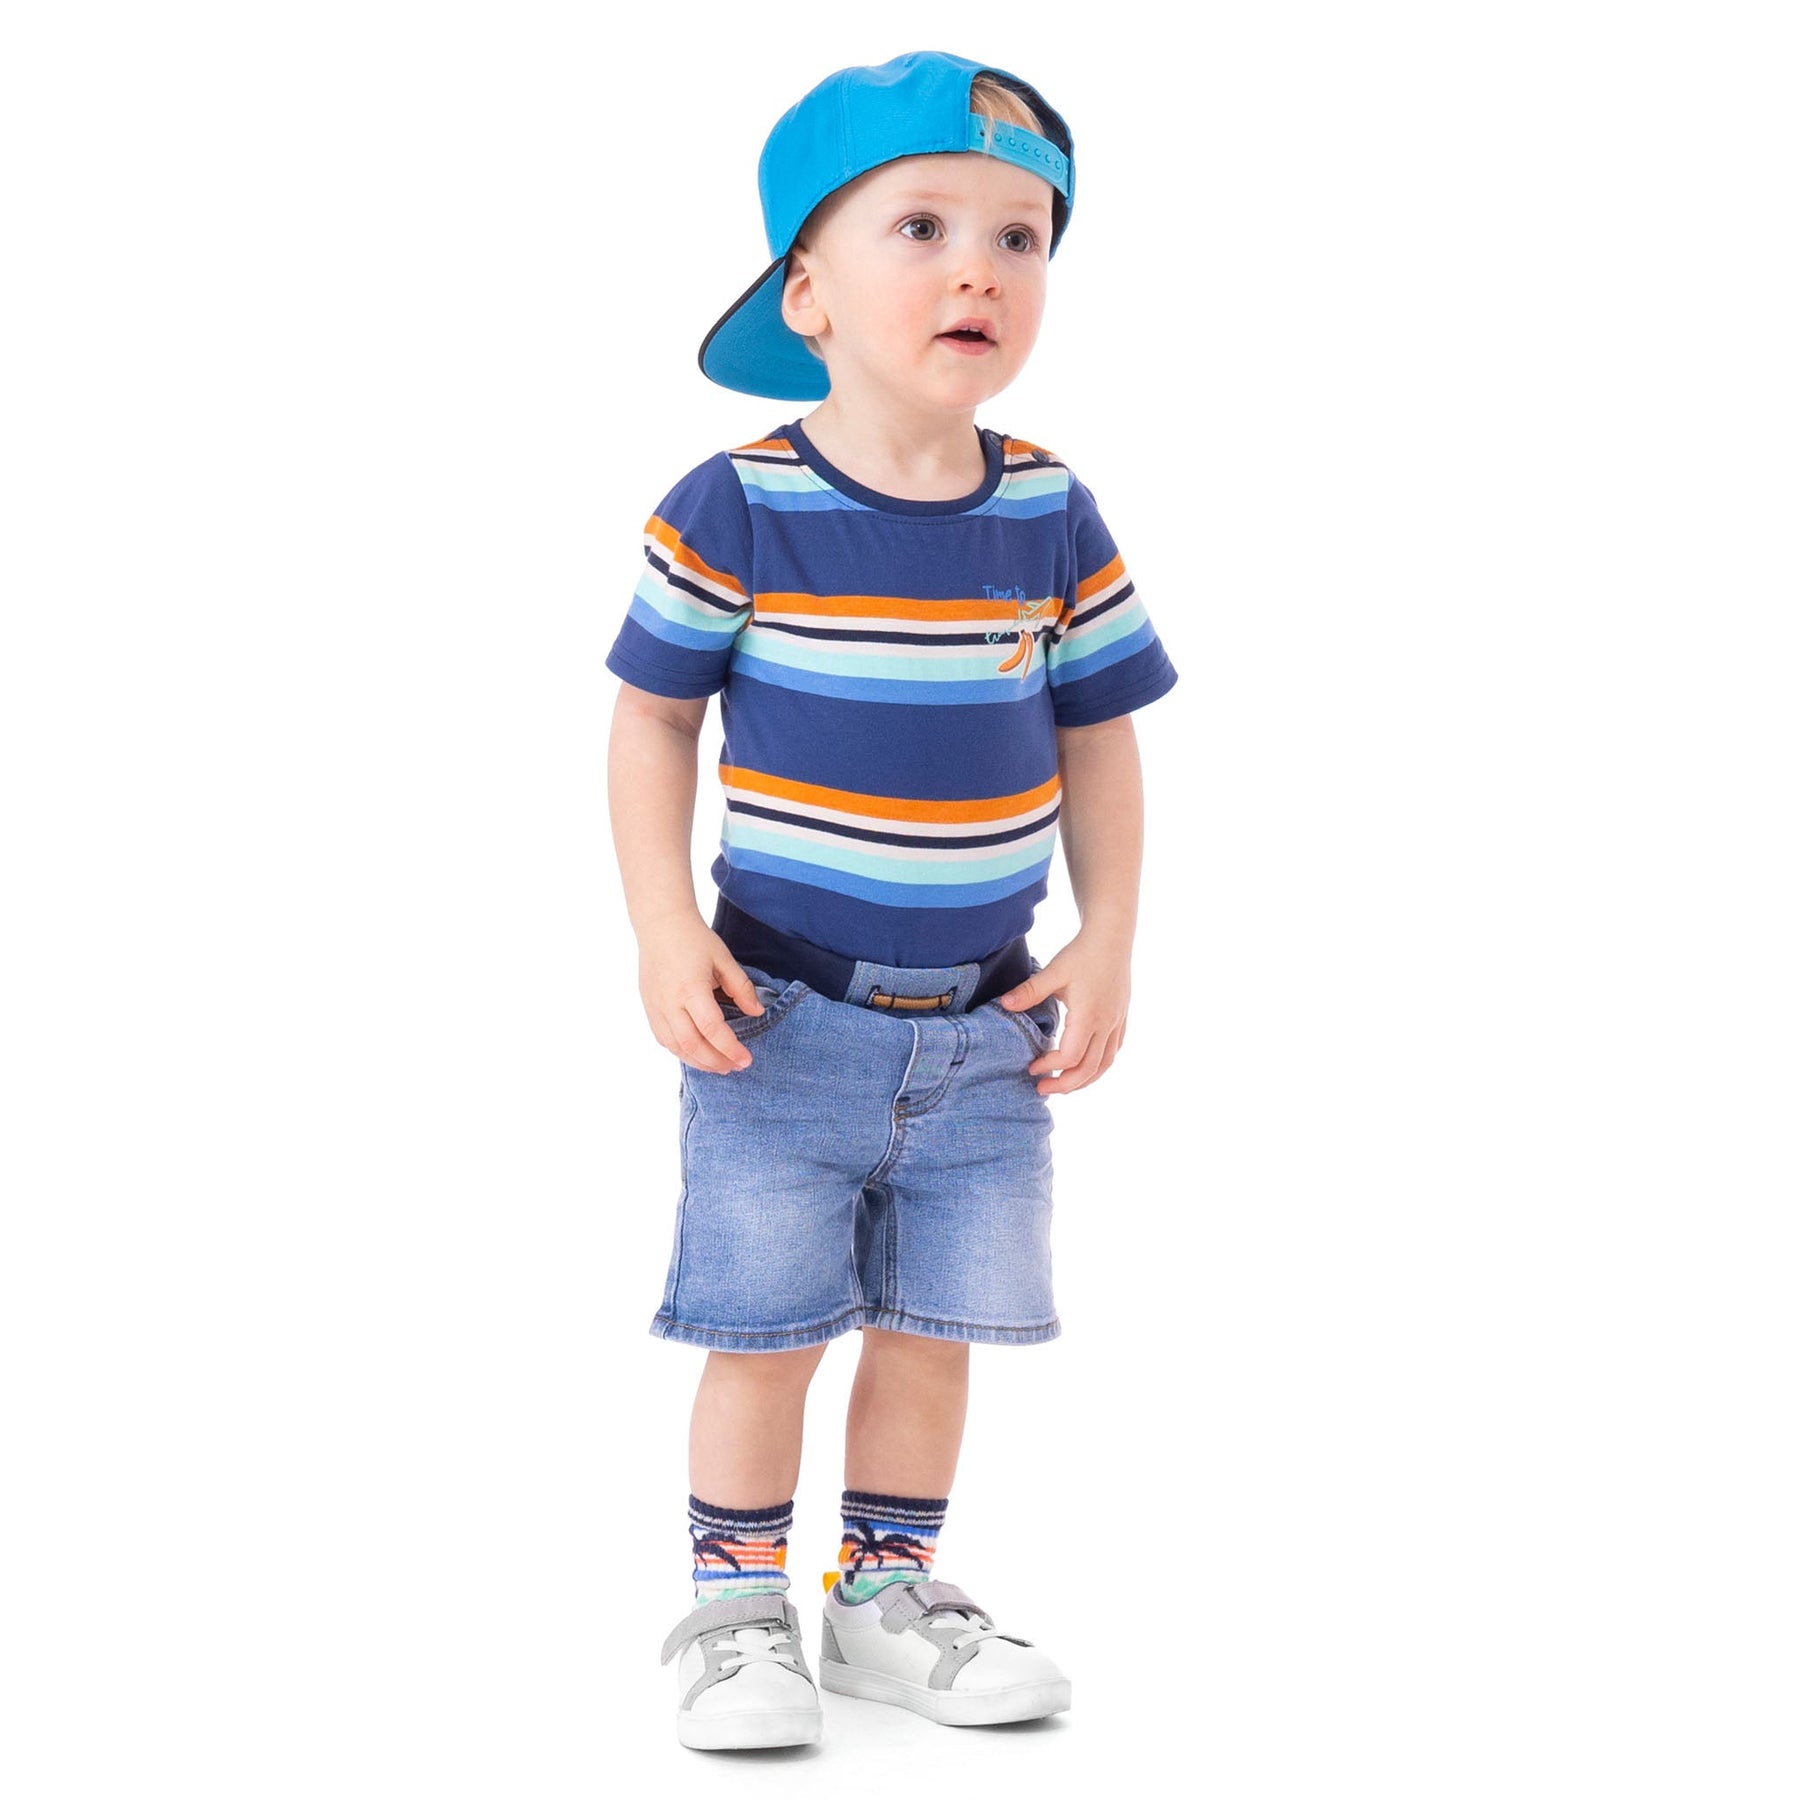 Casquette pour enfant garçon par Nano | S23CAS01 Bleu | Boutique Flos, vêtements mode pour bébés et enfants